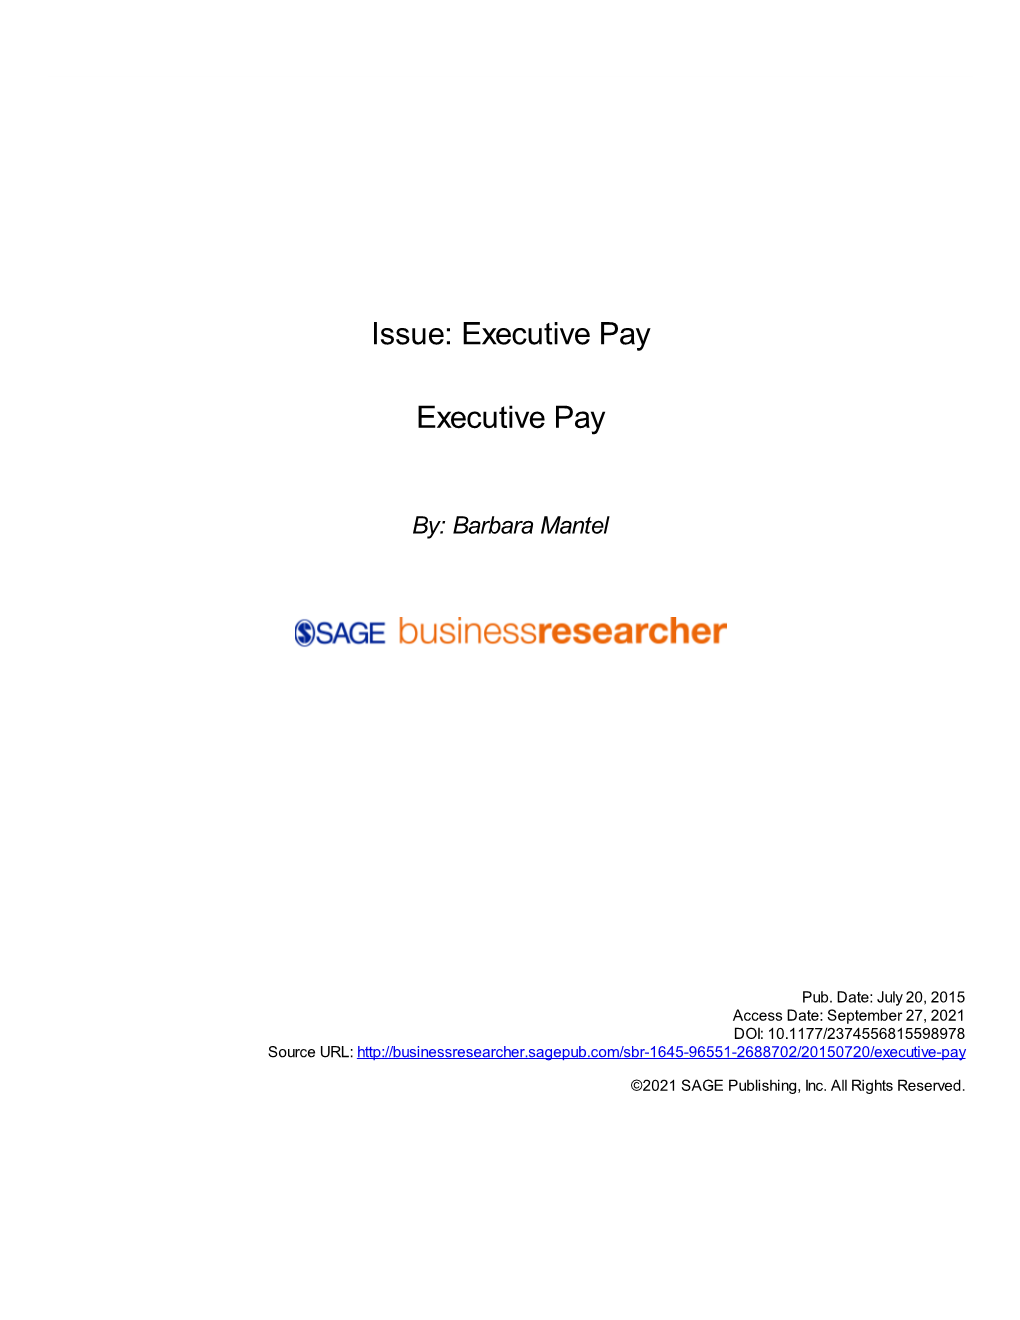 Executive Pay Executive